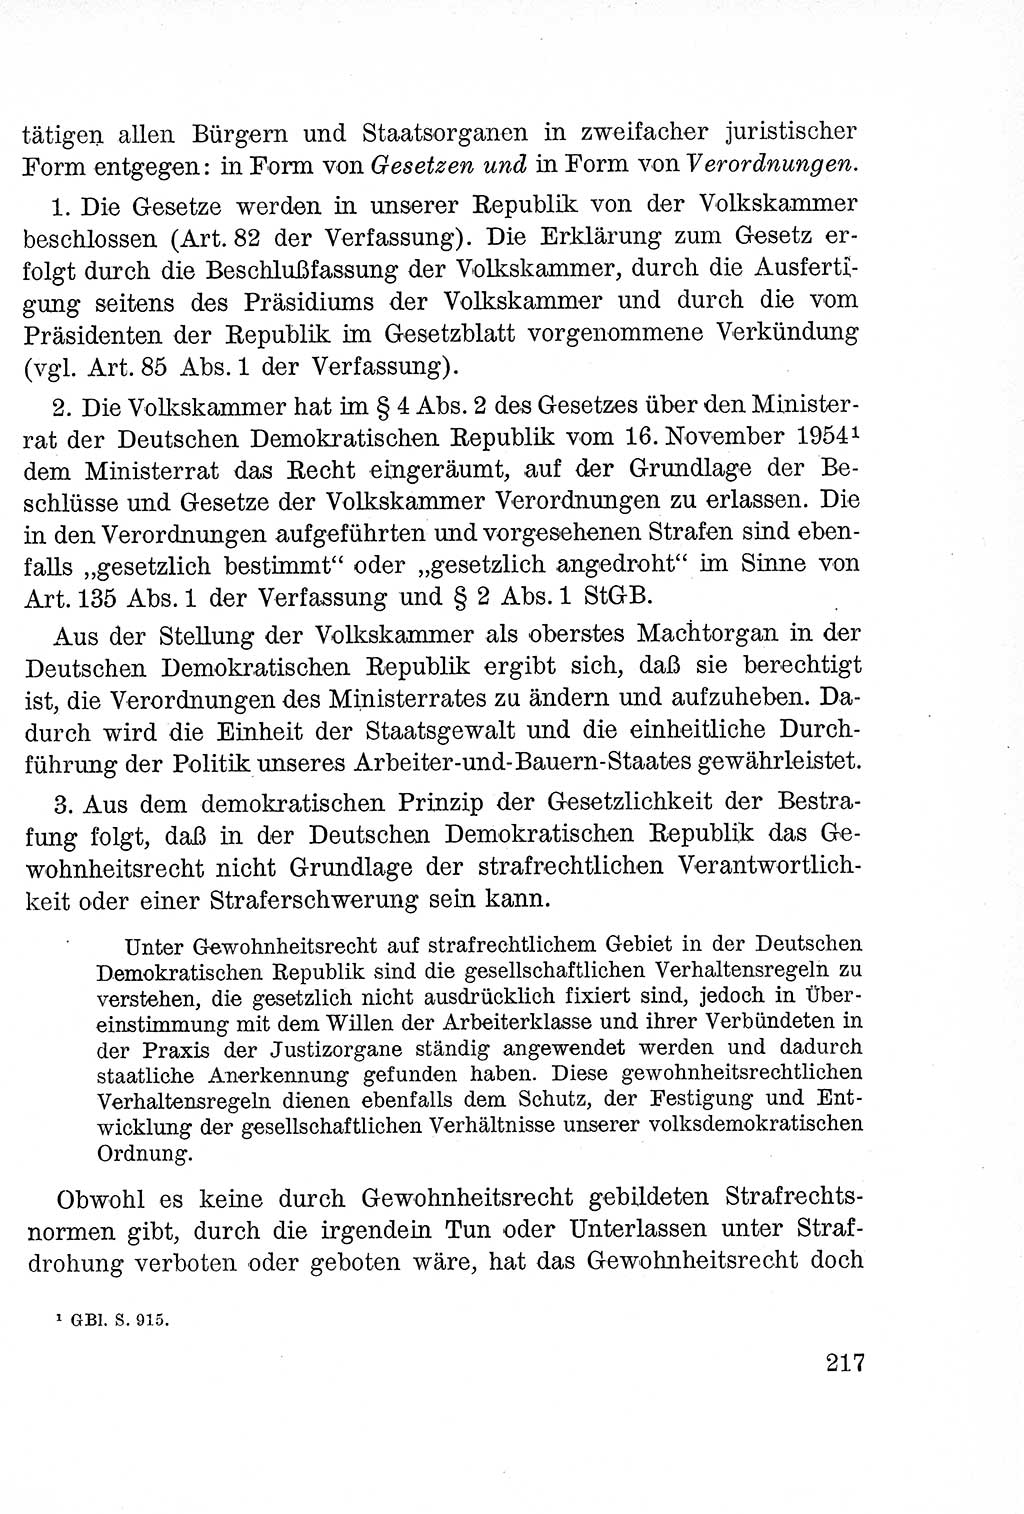 Lehrbuch des Strafrechts der Deutschen Demokratischen Republik (DDR), Allgemeiner Teil 1957, Seite 217 (Lb. Strafr. DDR AT 1957, S. 217)